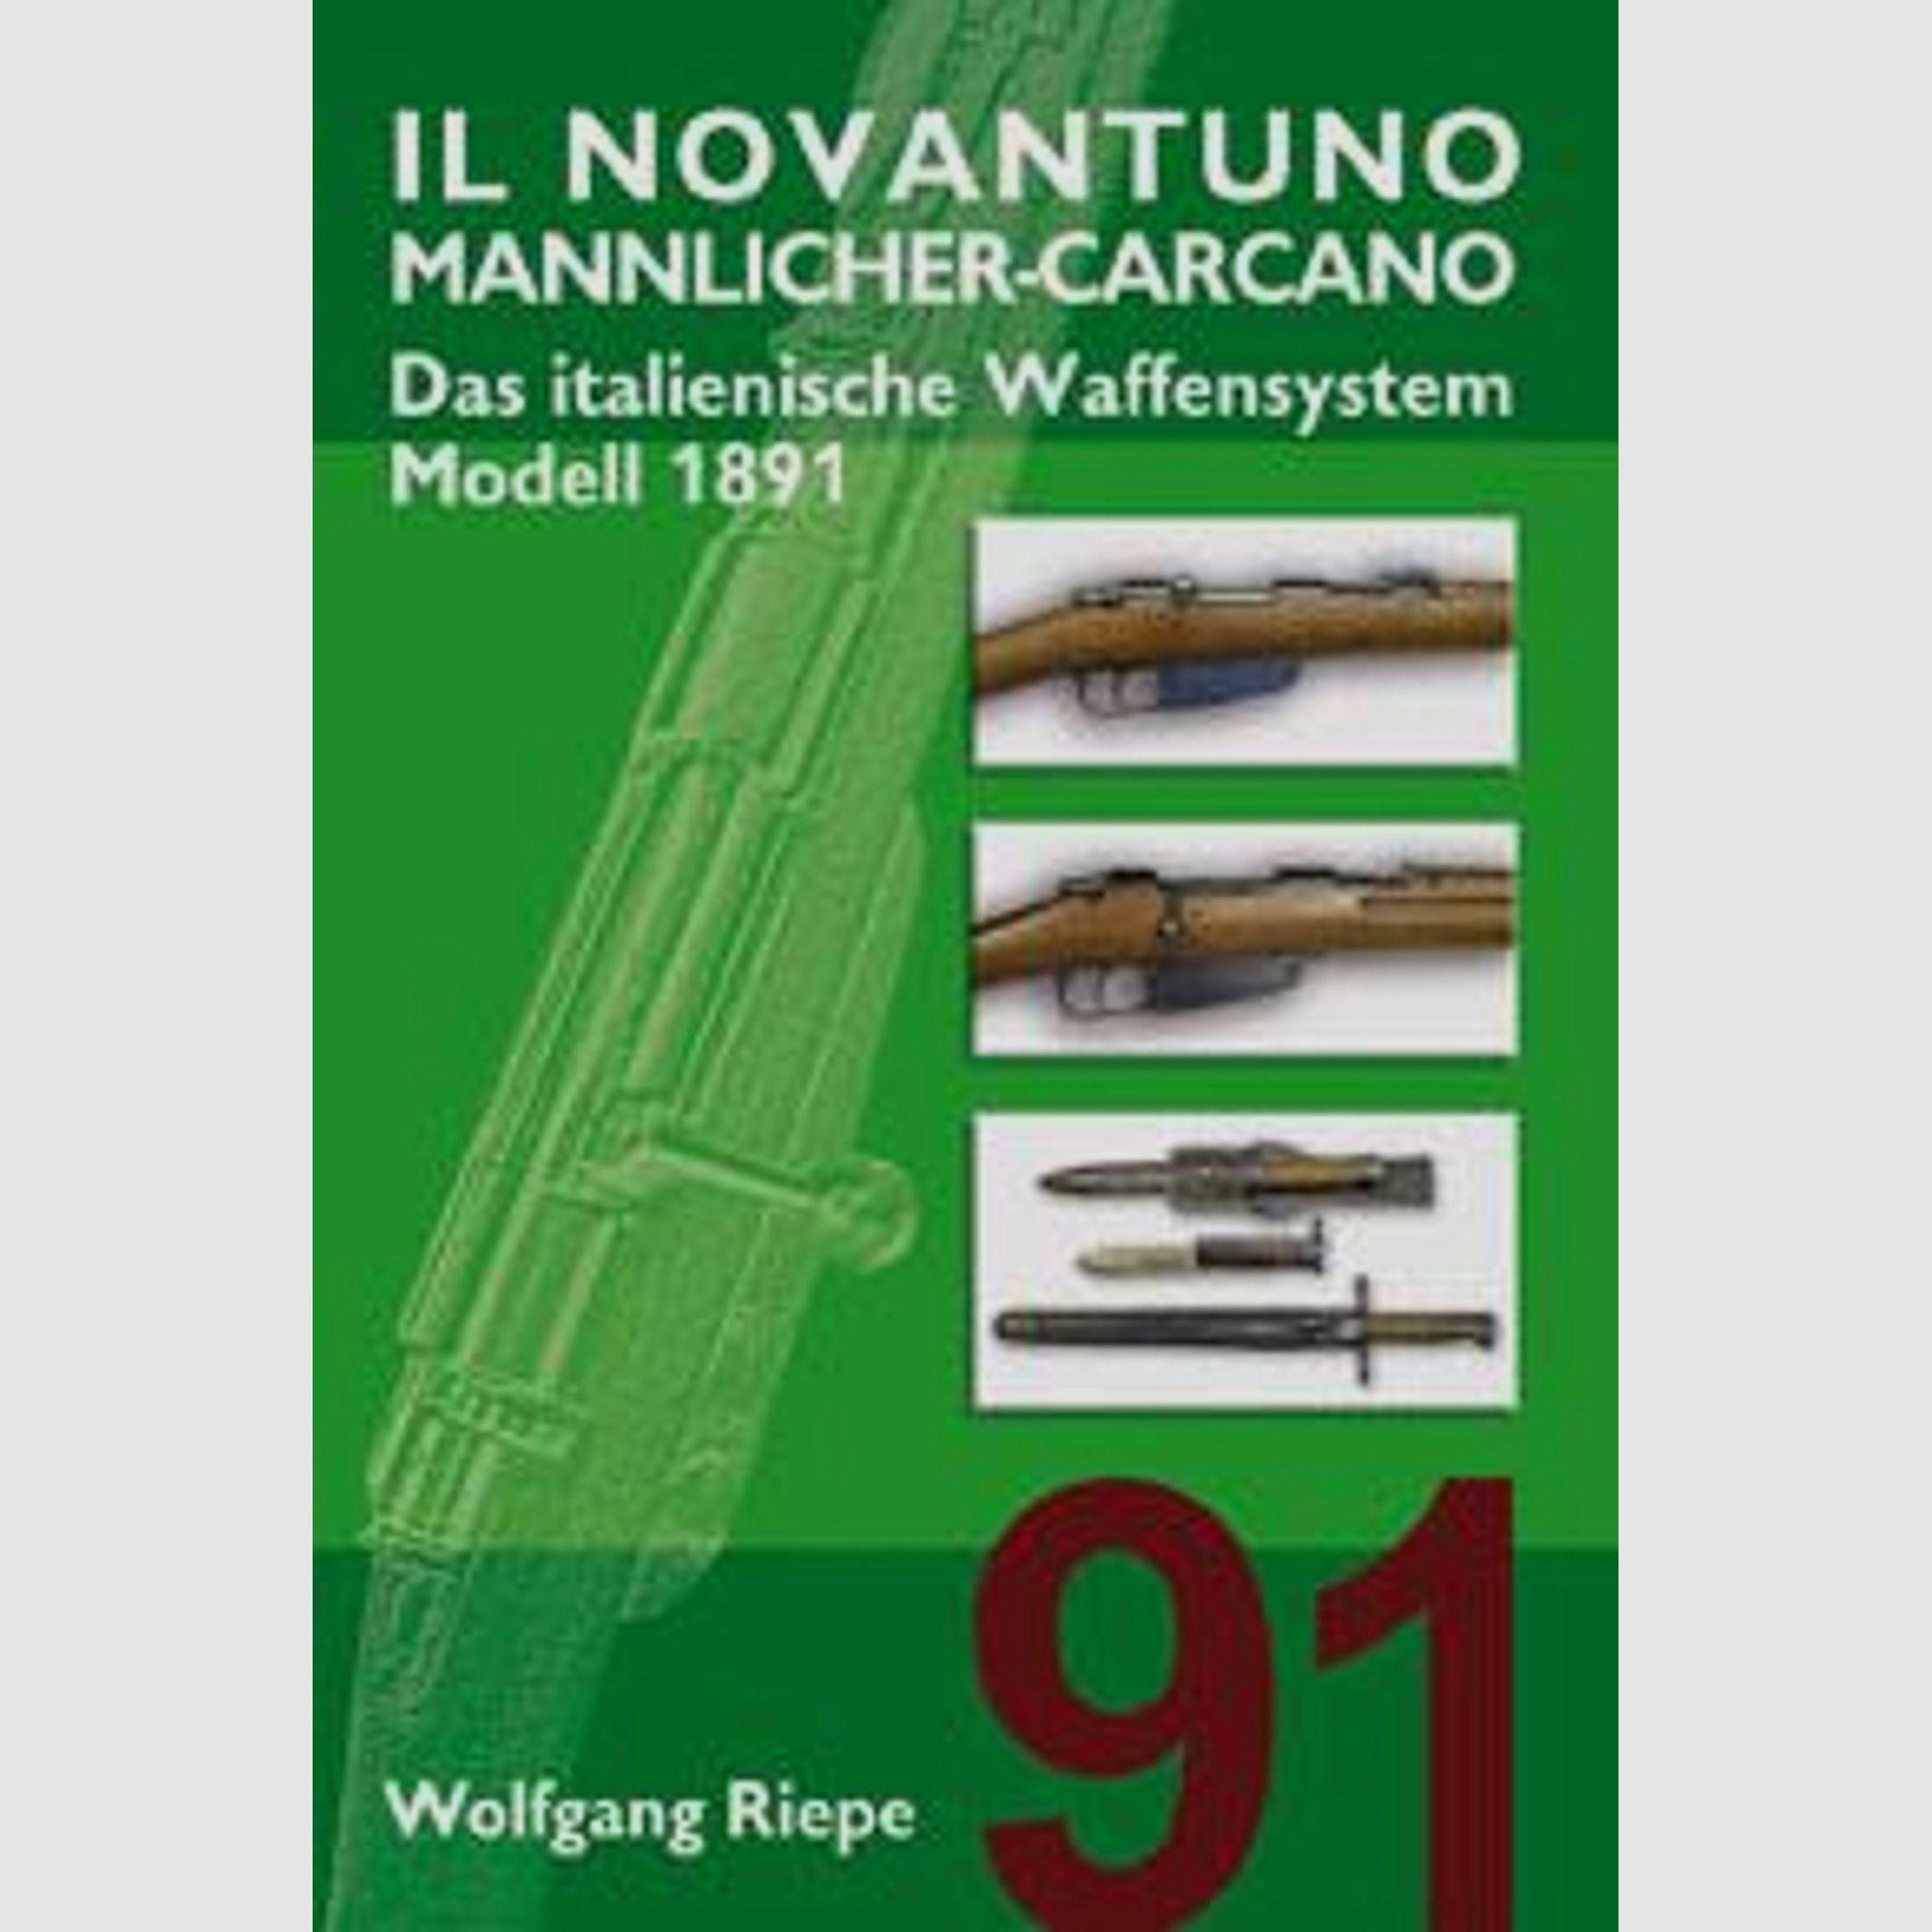 IL NOVANTUNO Mannlicher-Carcano / M1891